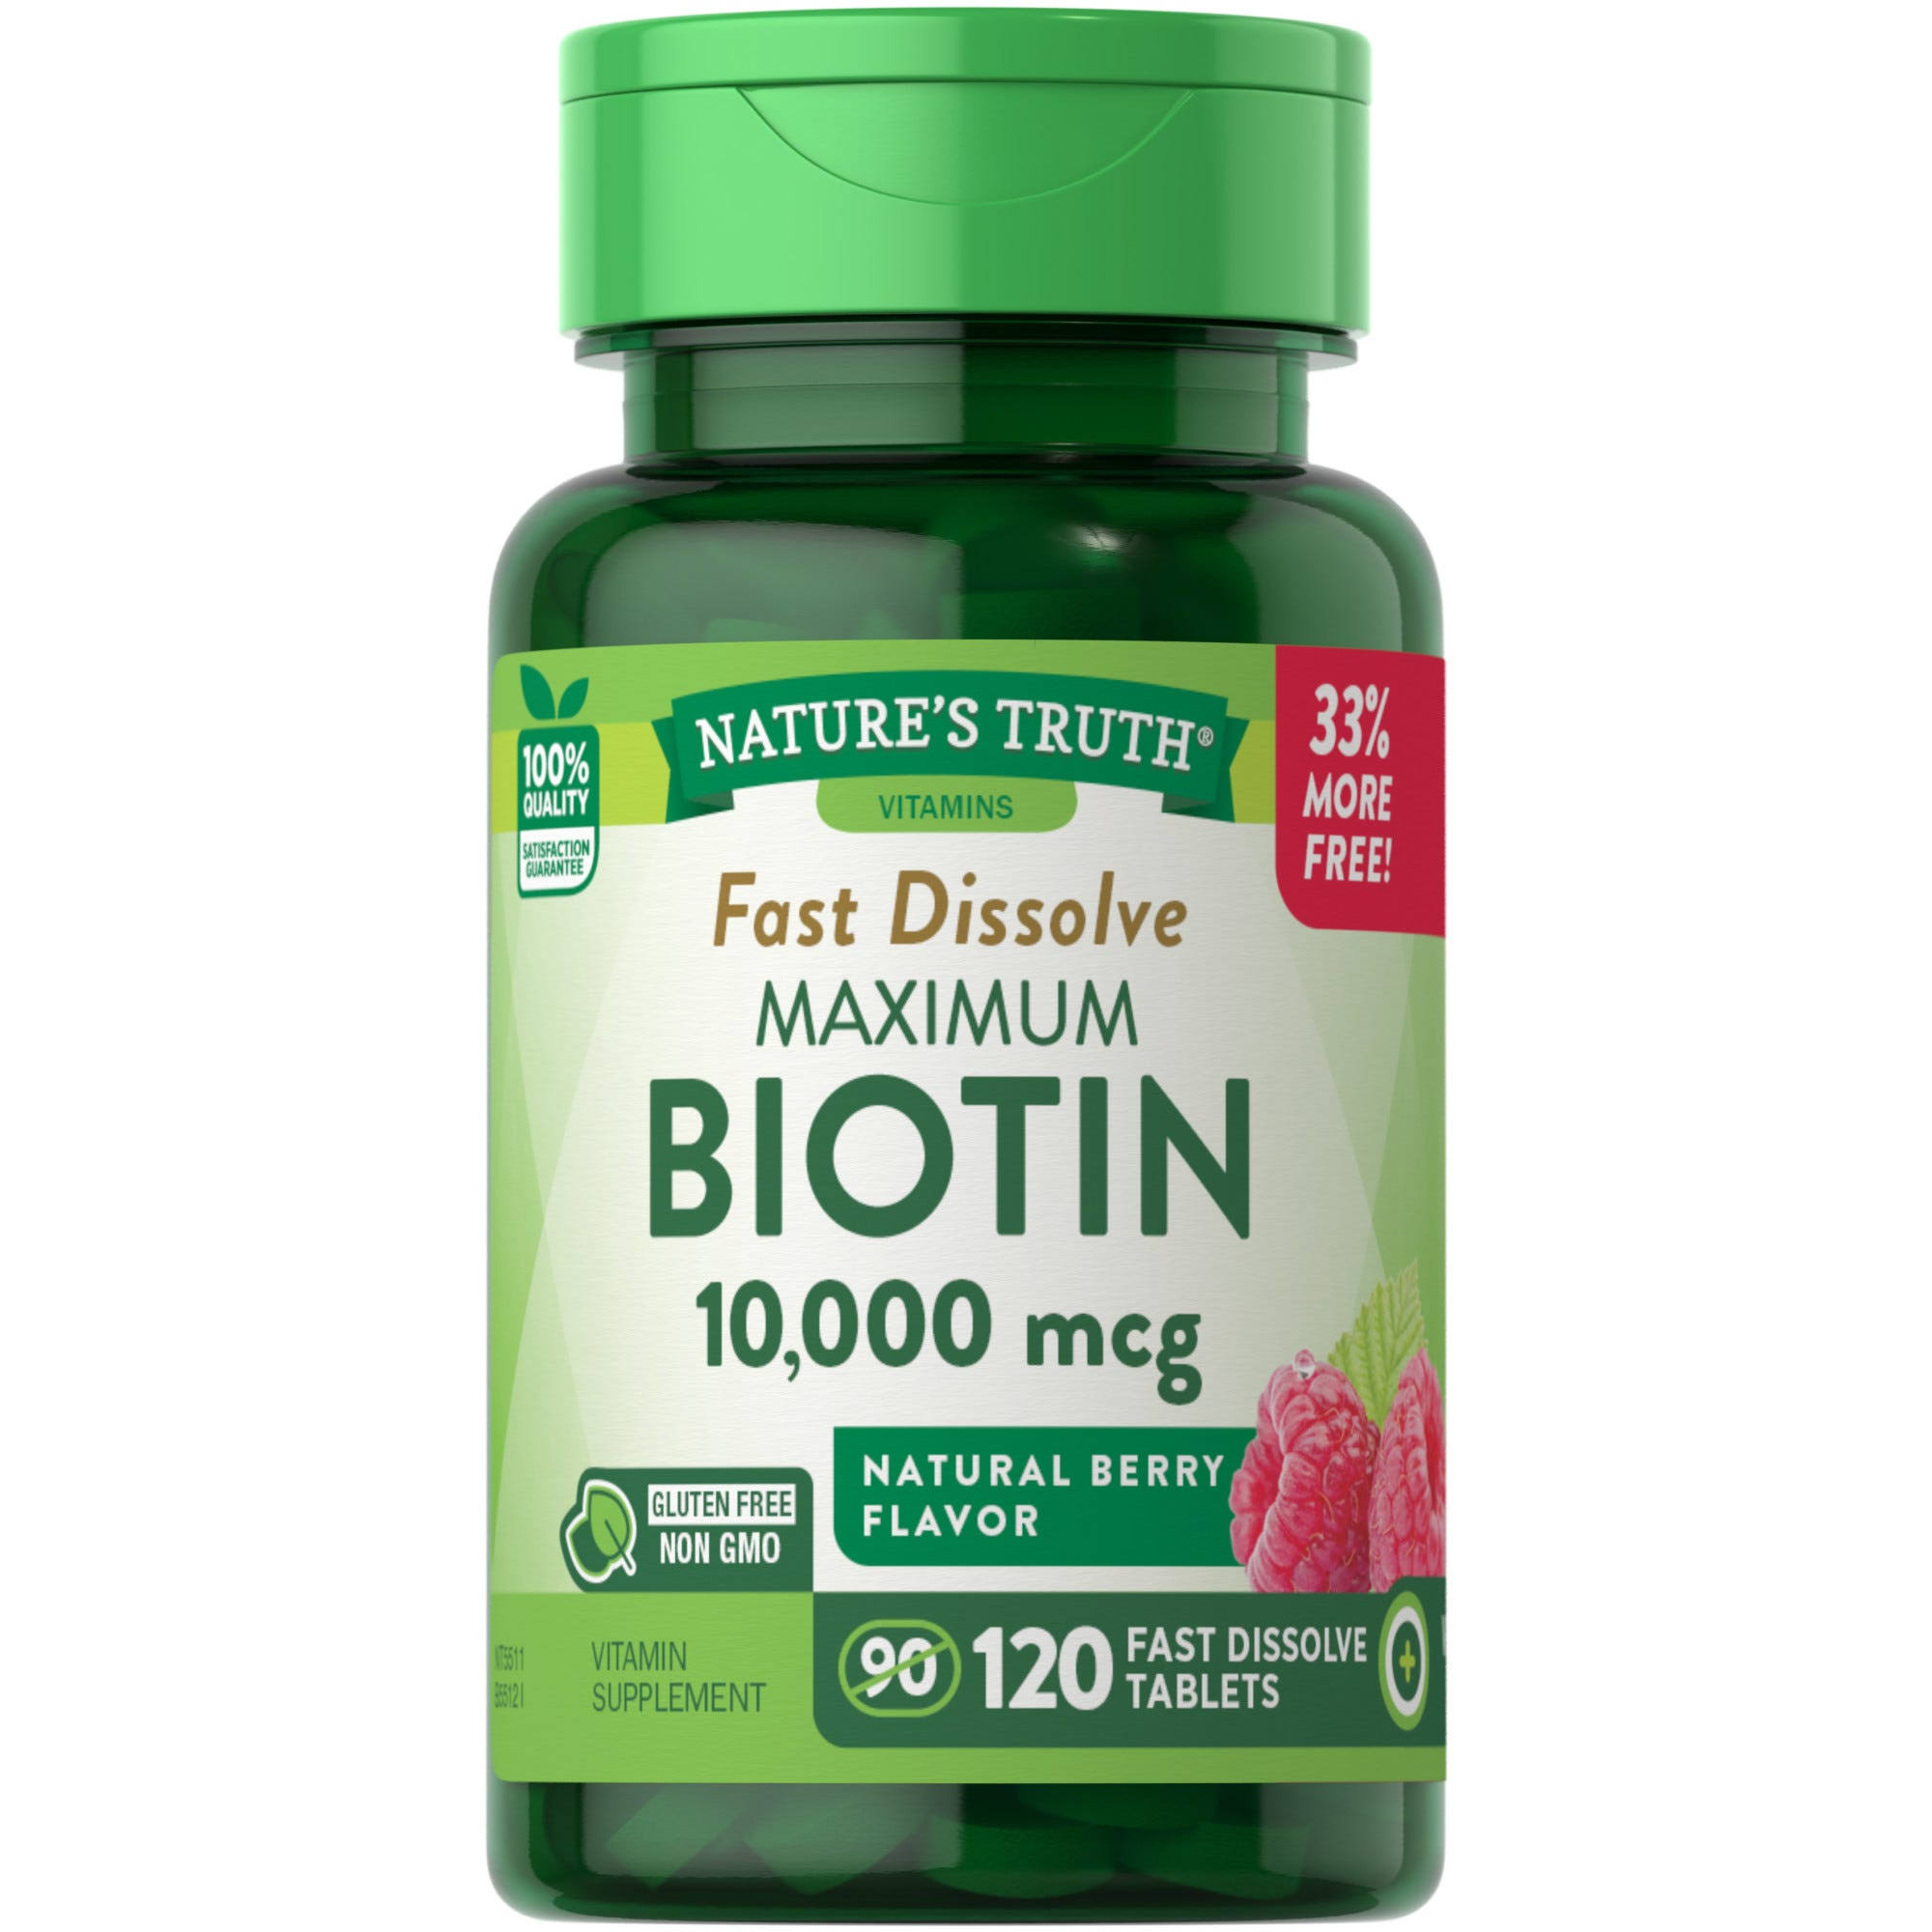 Nature's Truth Maximum Biotin Supplement - 10,000mcg, 120 Fast Dissolve Tabs, Berry